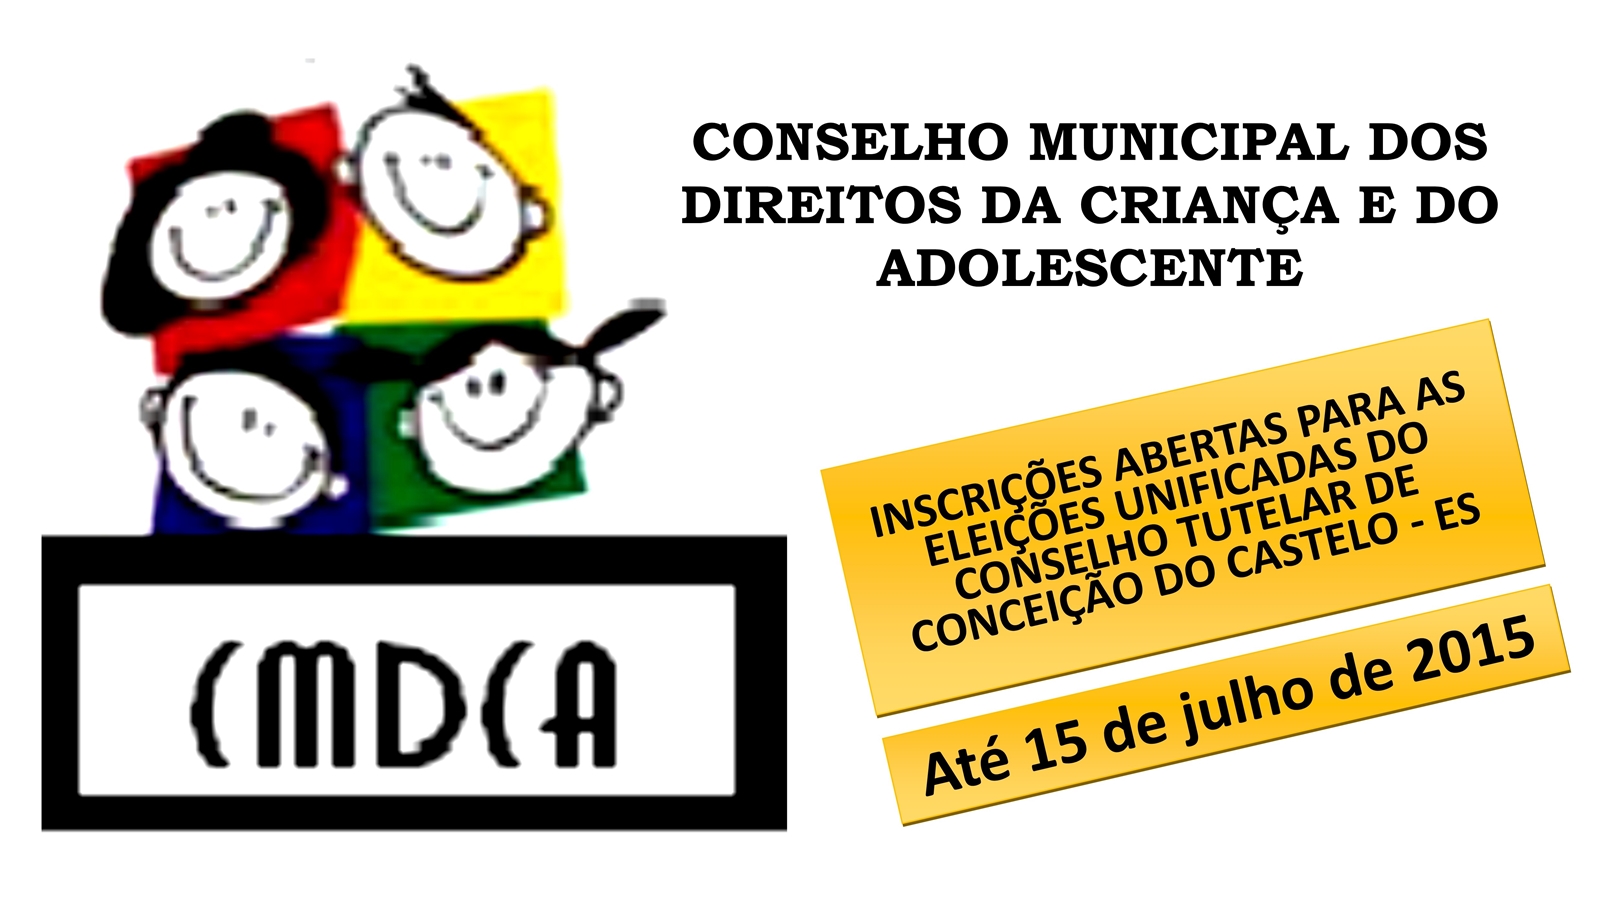 Inscrições abertas nesta quarta-feira, 01 de julho para as eleições unificadas do Conselho Tutelar de Conceição do Castelo